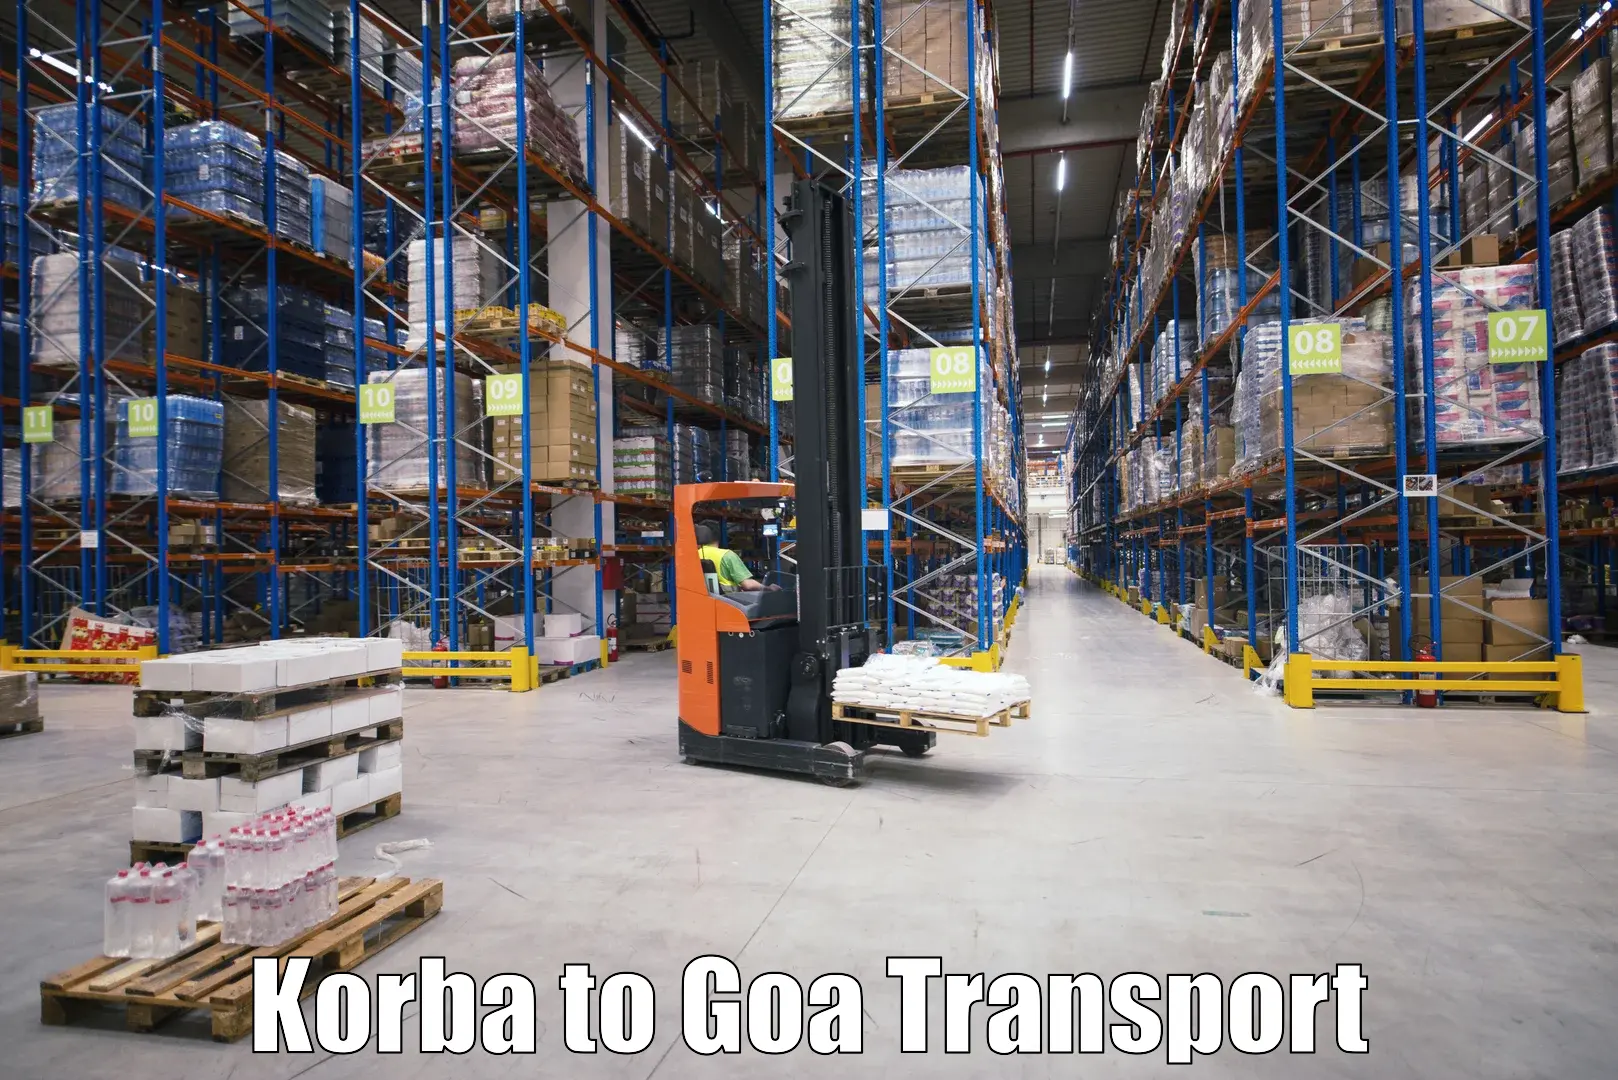 Nearest transport service Korba to Panaji